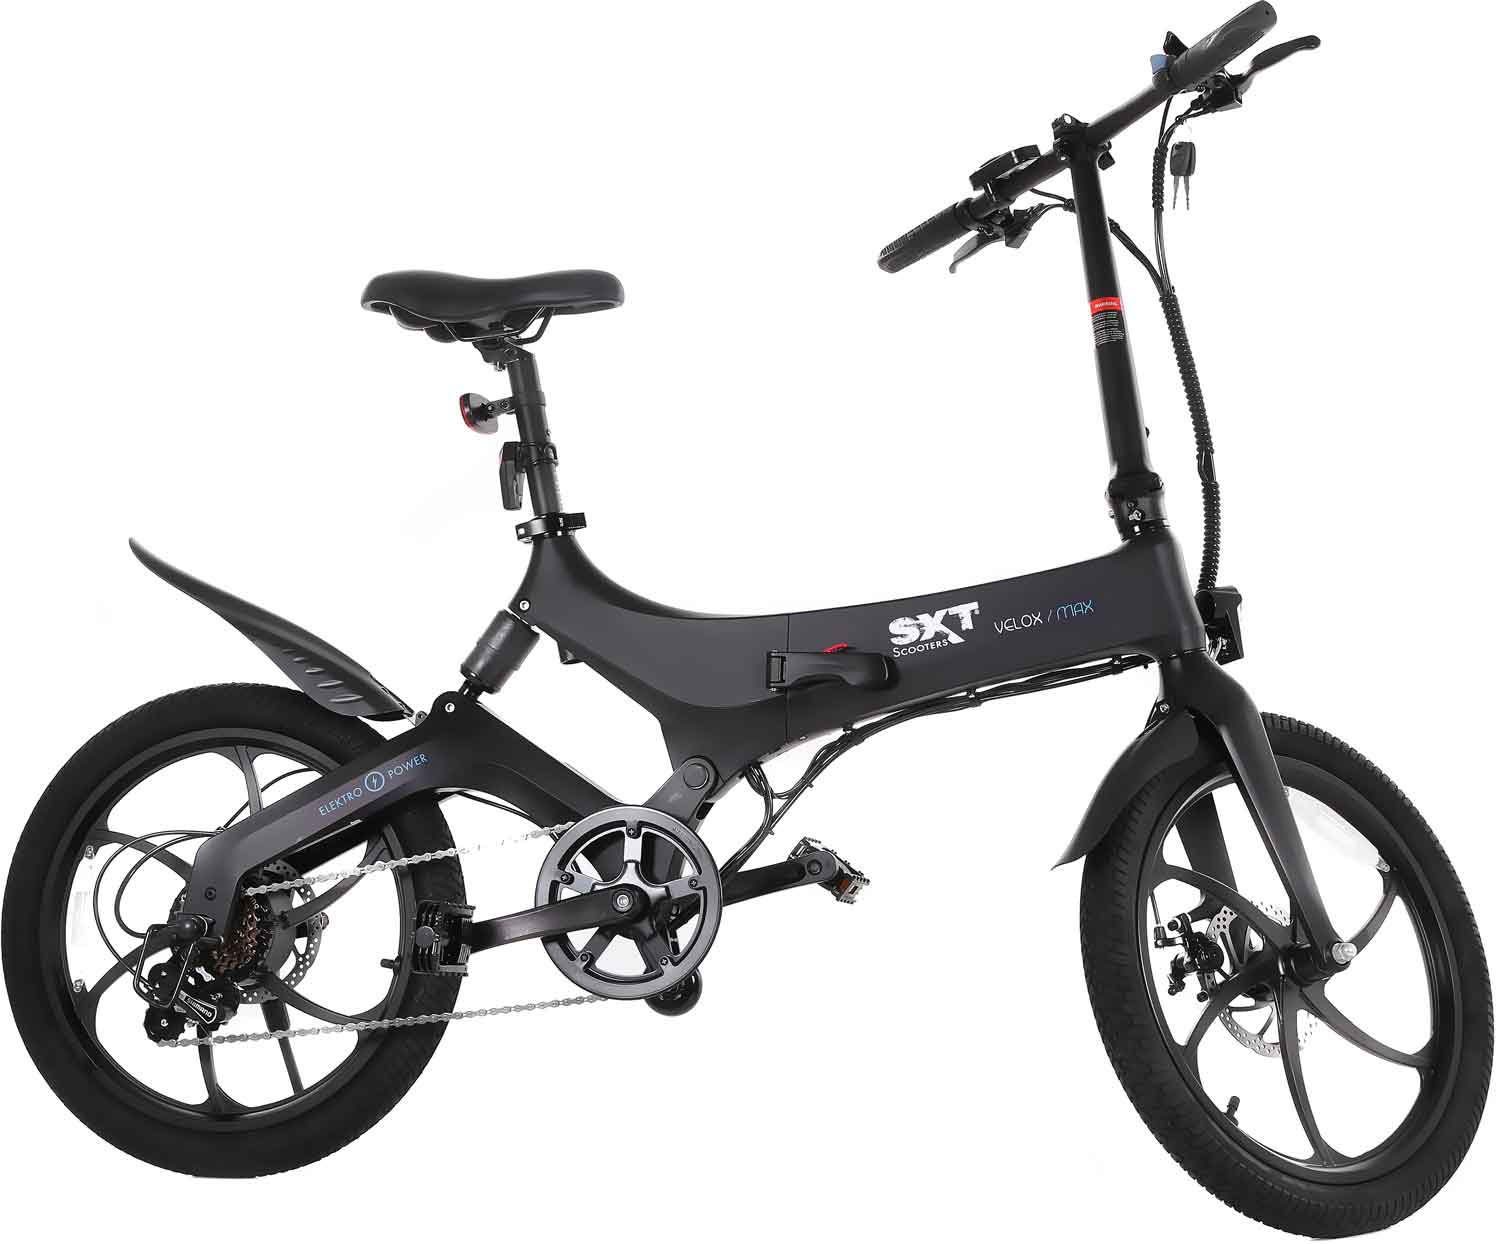 100 % authentisch garantiert SXT Scooters E-Bike Heckmotor, Wh Akku Gang, Velox 280,8 MAX, 6